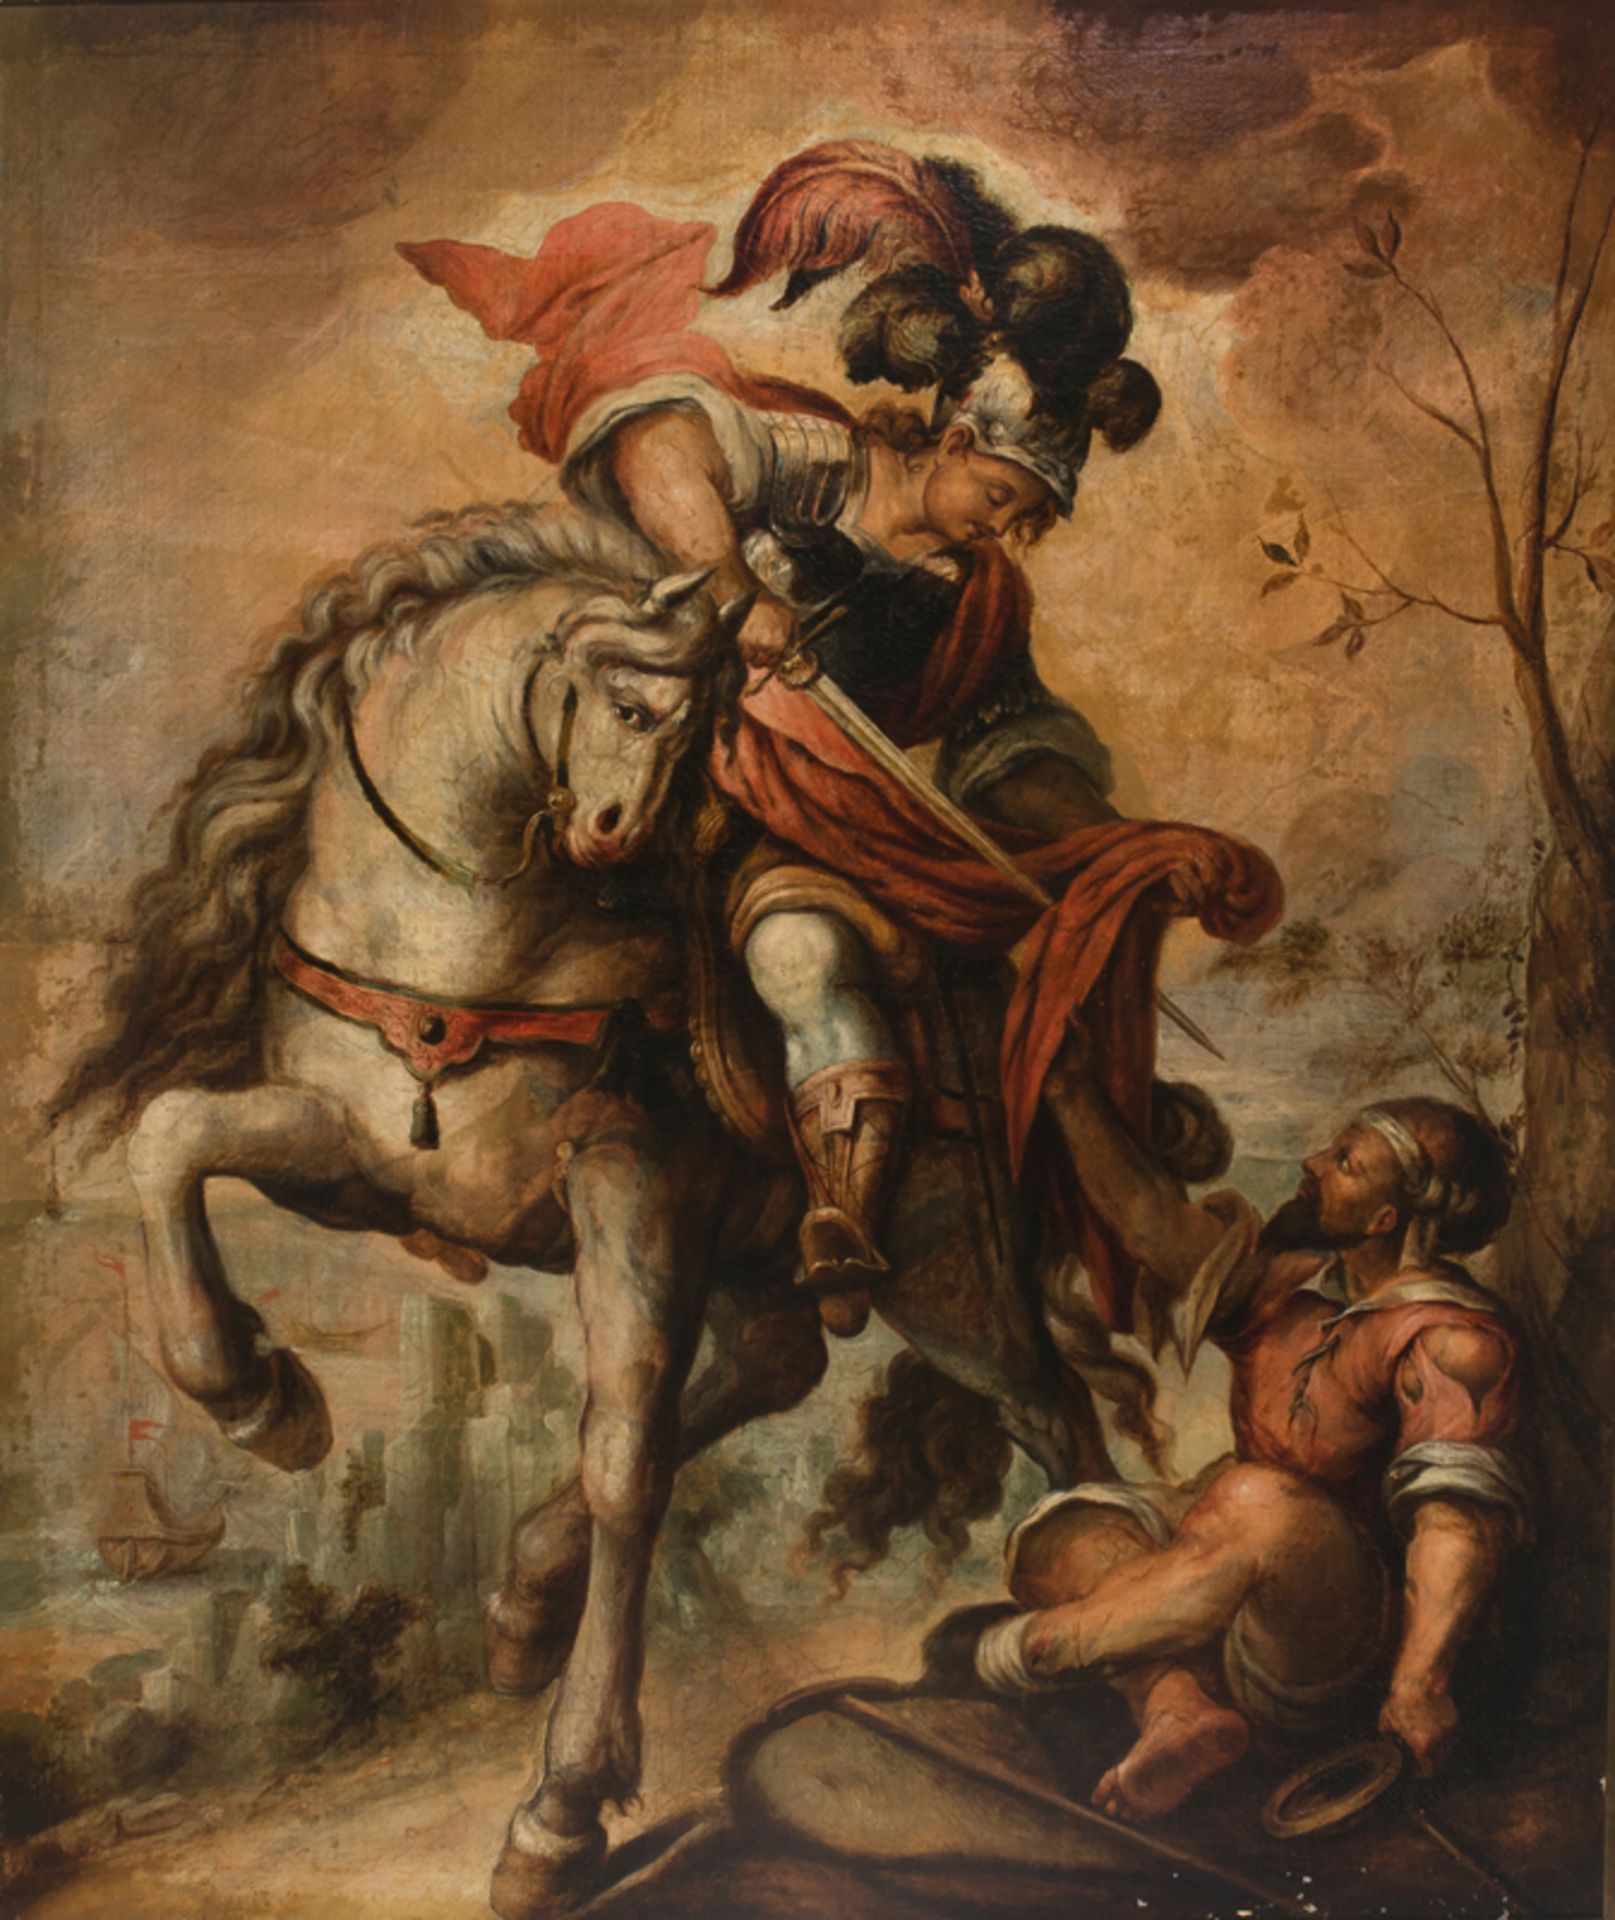 Attributed to Antonio Acero de la Cruz (Santa Fé de Bogota, c. 1600 -1667)